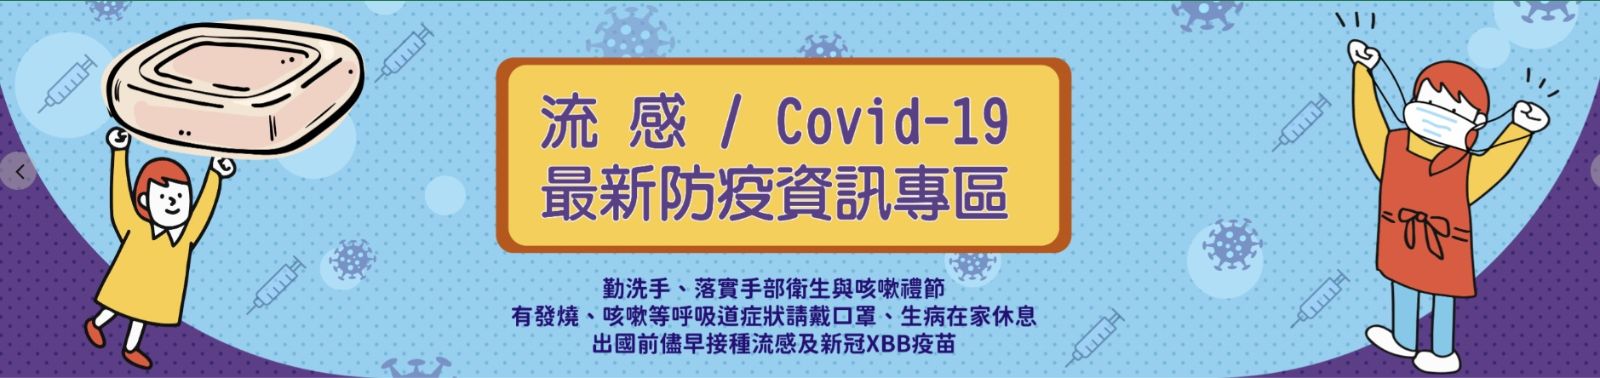 COVID-19防疫專區政策宣導:勤洗手、落實手部衛生與咳嗽禮節等